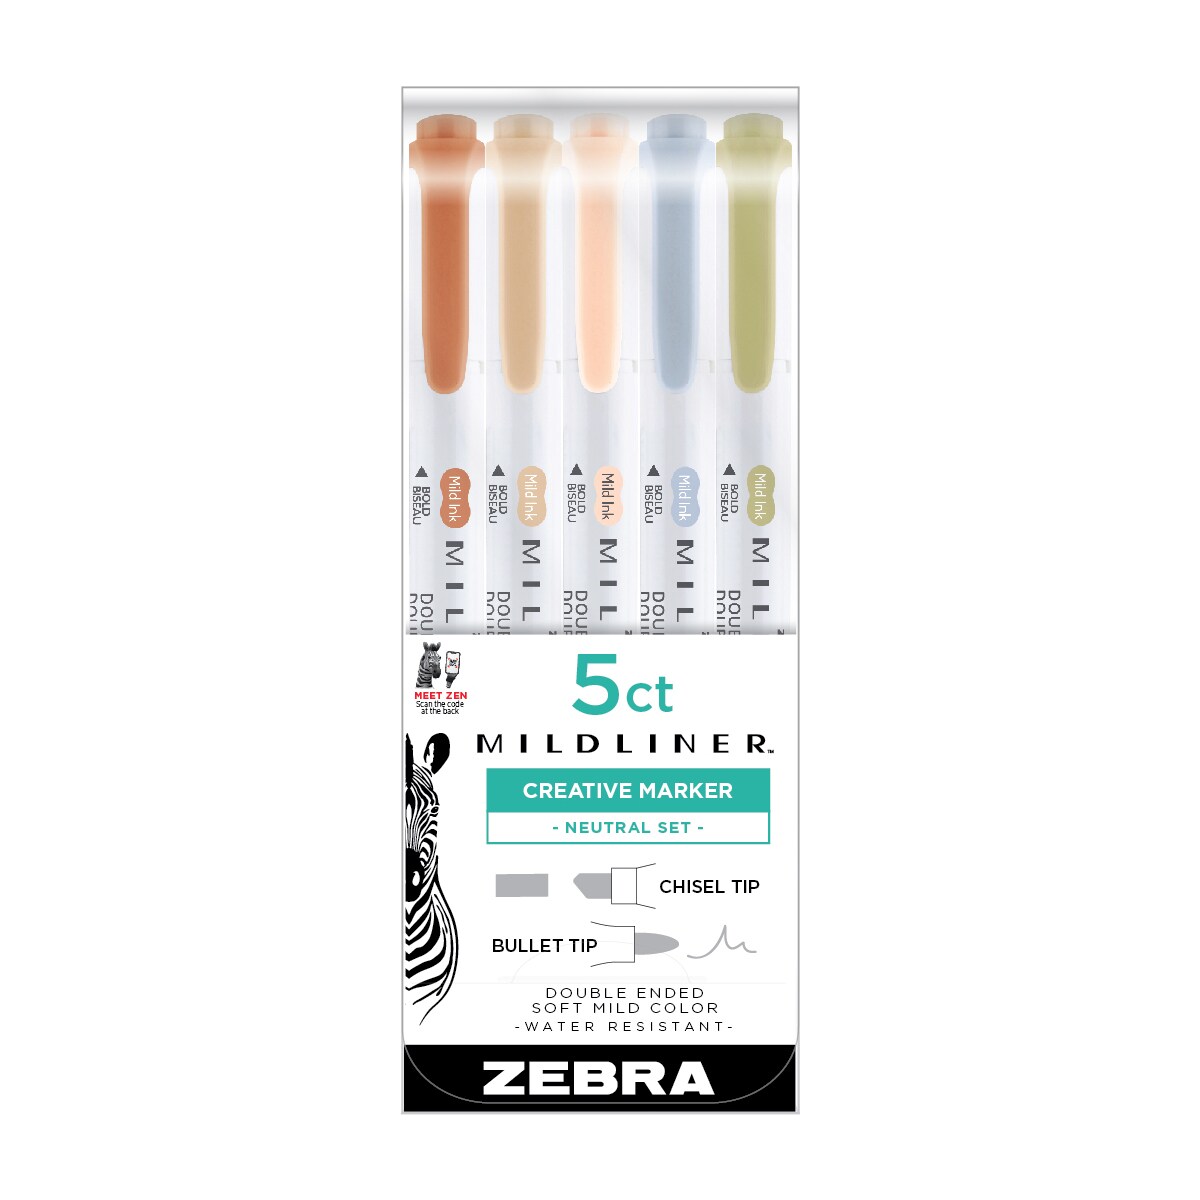 Zebra Pen Mildliner Double Ended Highlighter Review